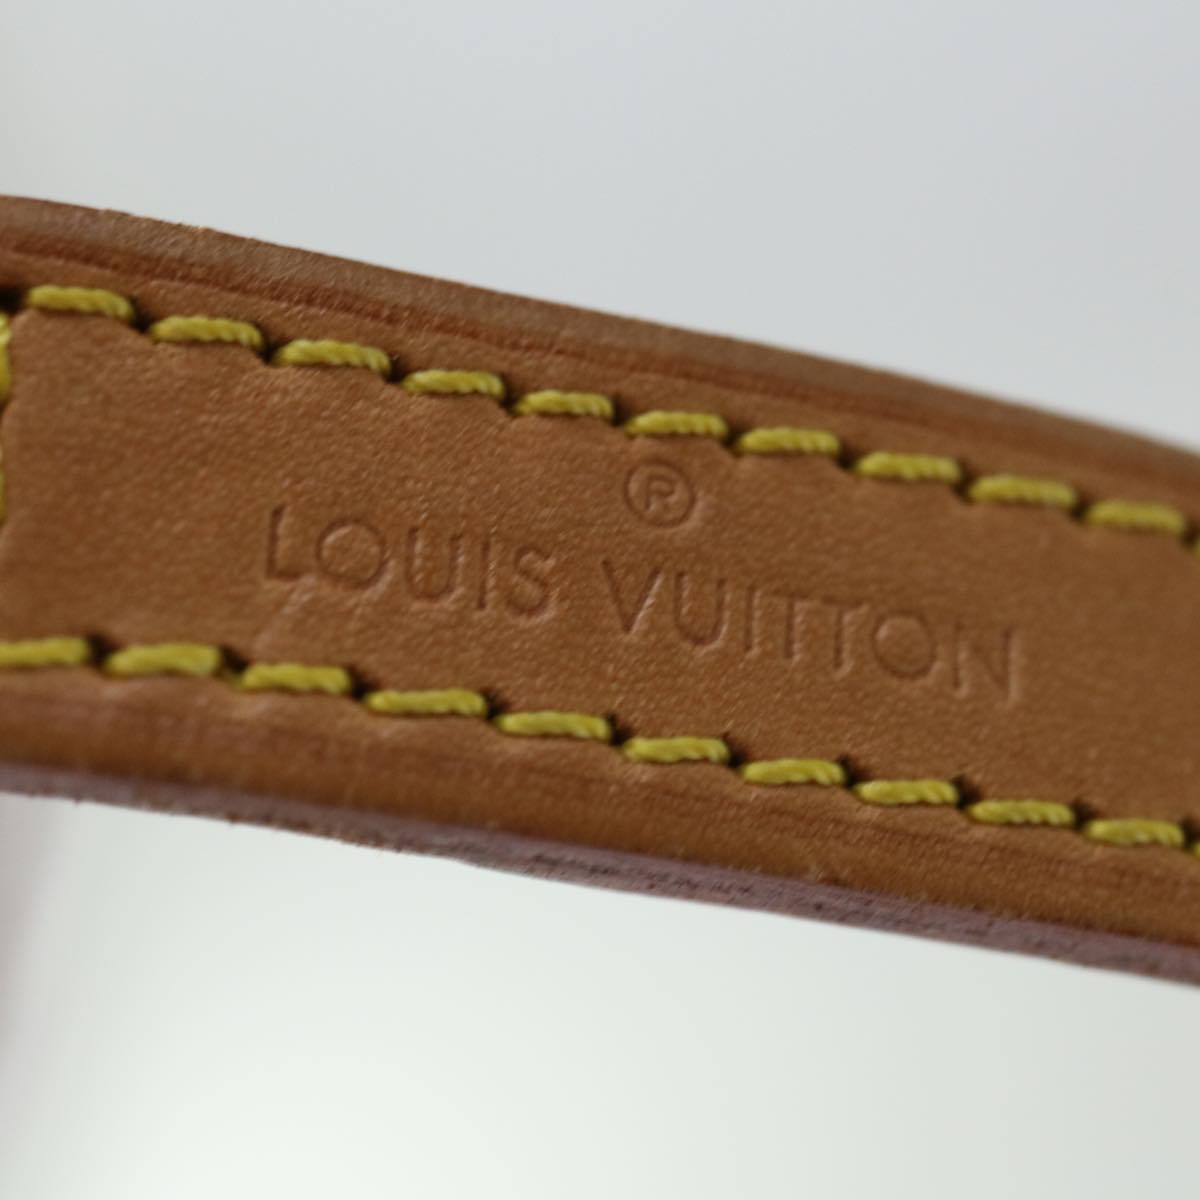 LOUIS VUITTON Shoulder Strap Leather 36.2"" Beige LV Auth ar11635B